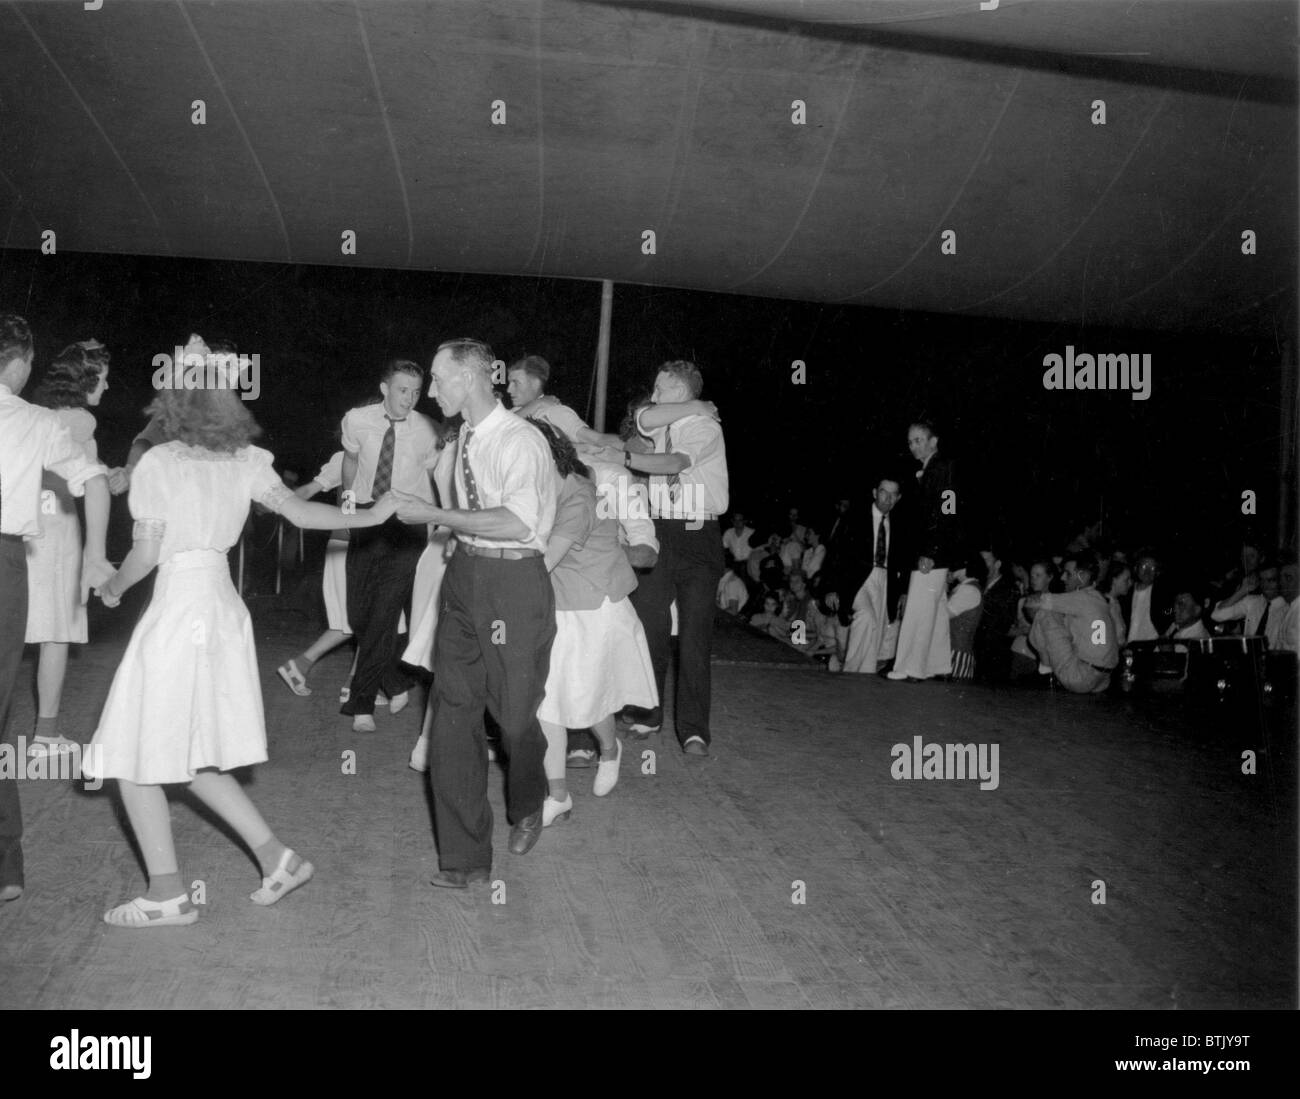 L'équipe de Square dance danse au Mountain Music Festival, Asheville, Caroline du Nord, vers 1938-1950. Banque D'Images